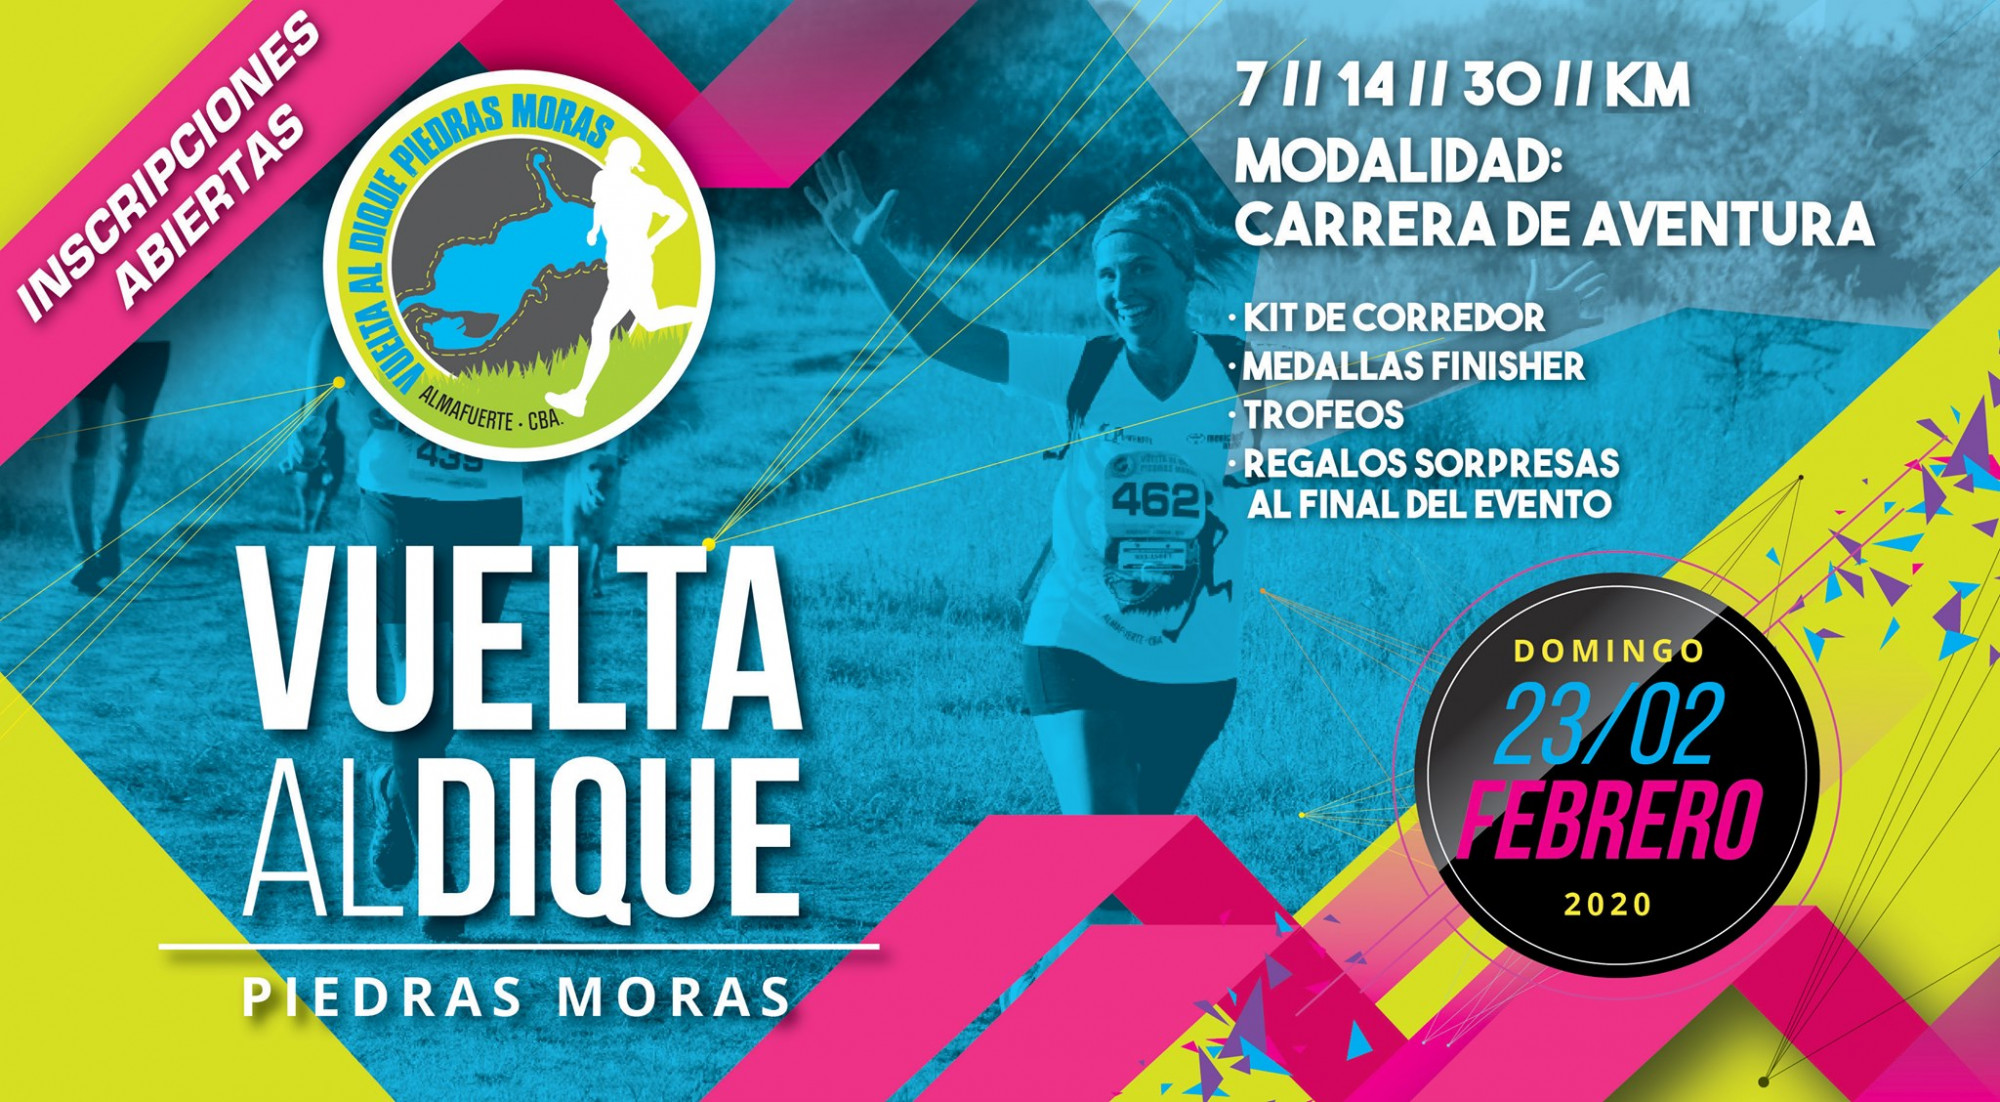 La 6º edición de la “Vuelta al Dique Piedras Moras” está en marcha